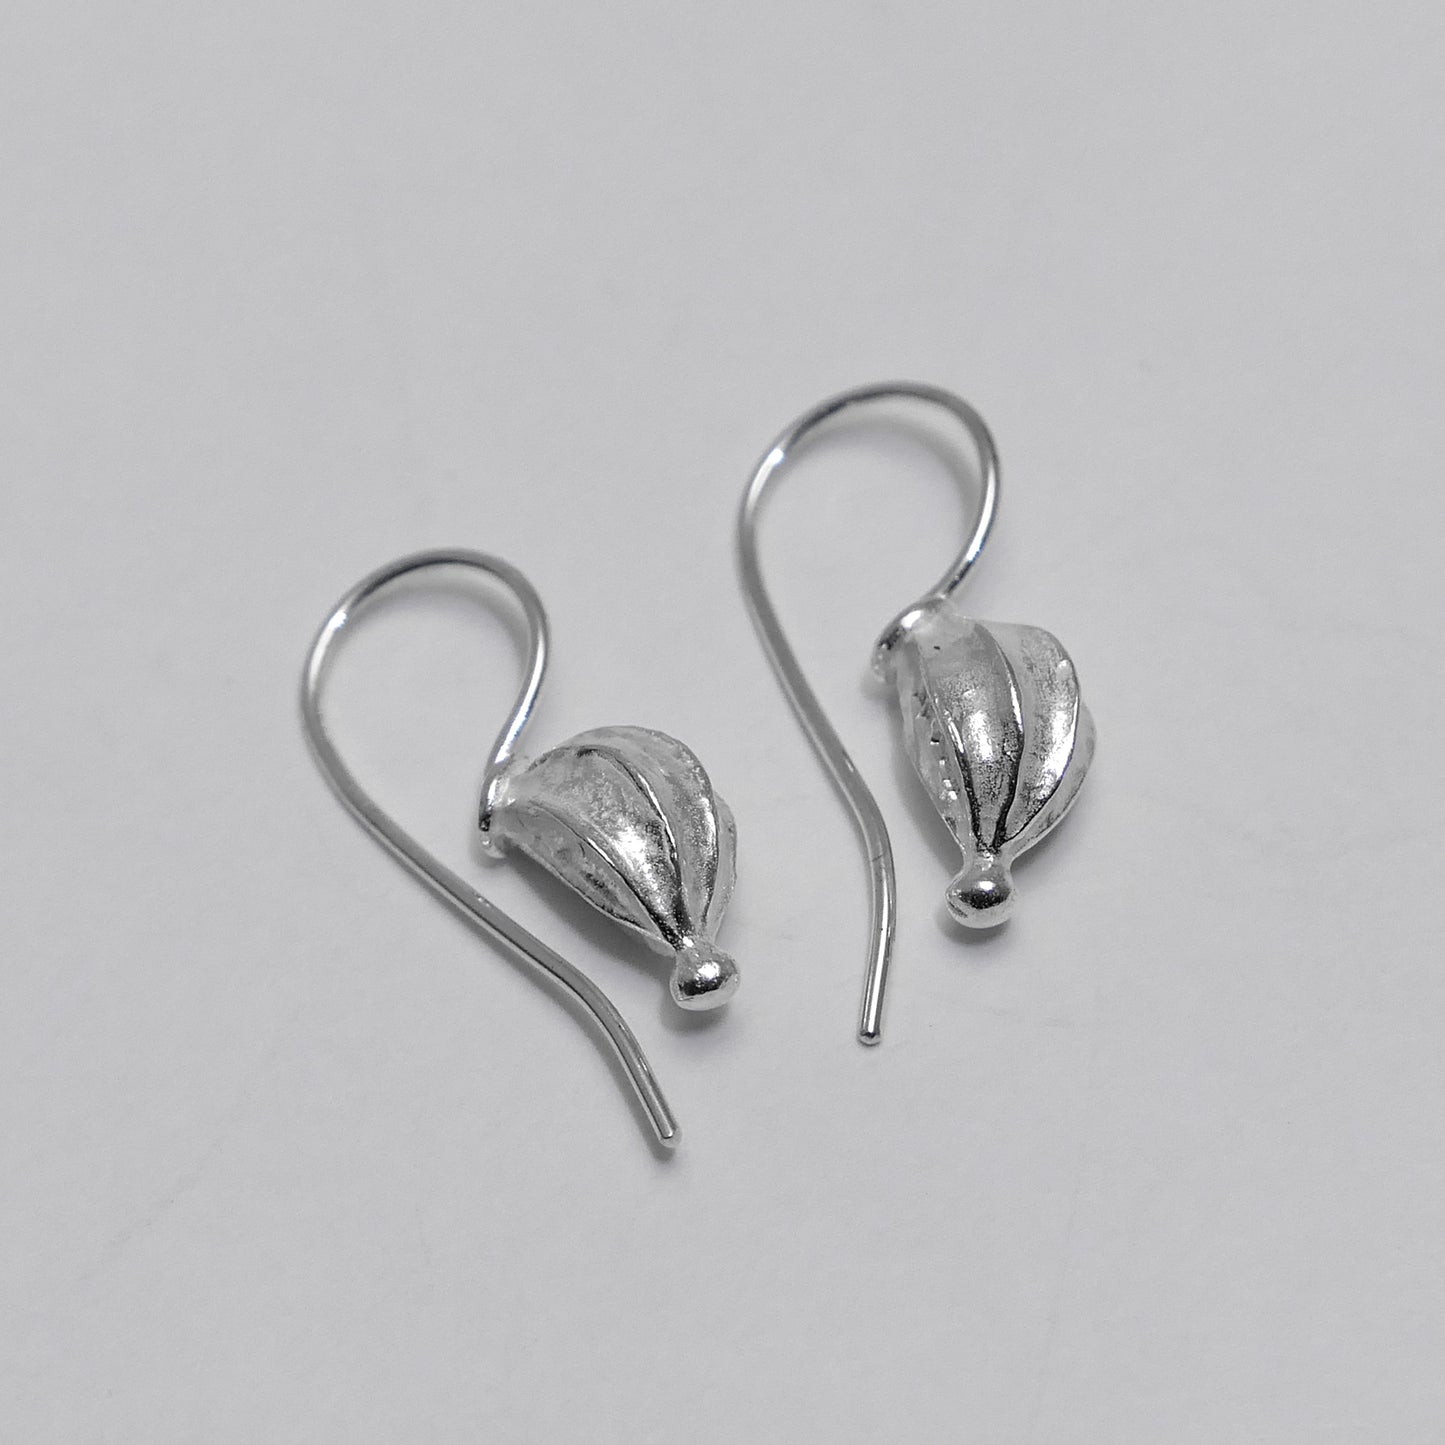 Small fat seed pod sterling silver earrings